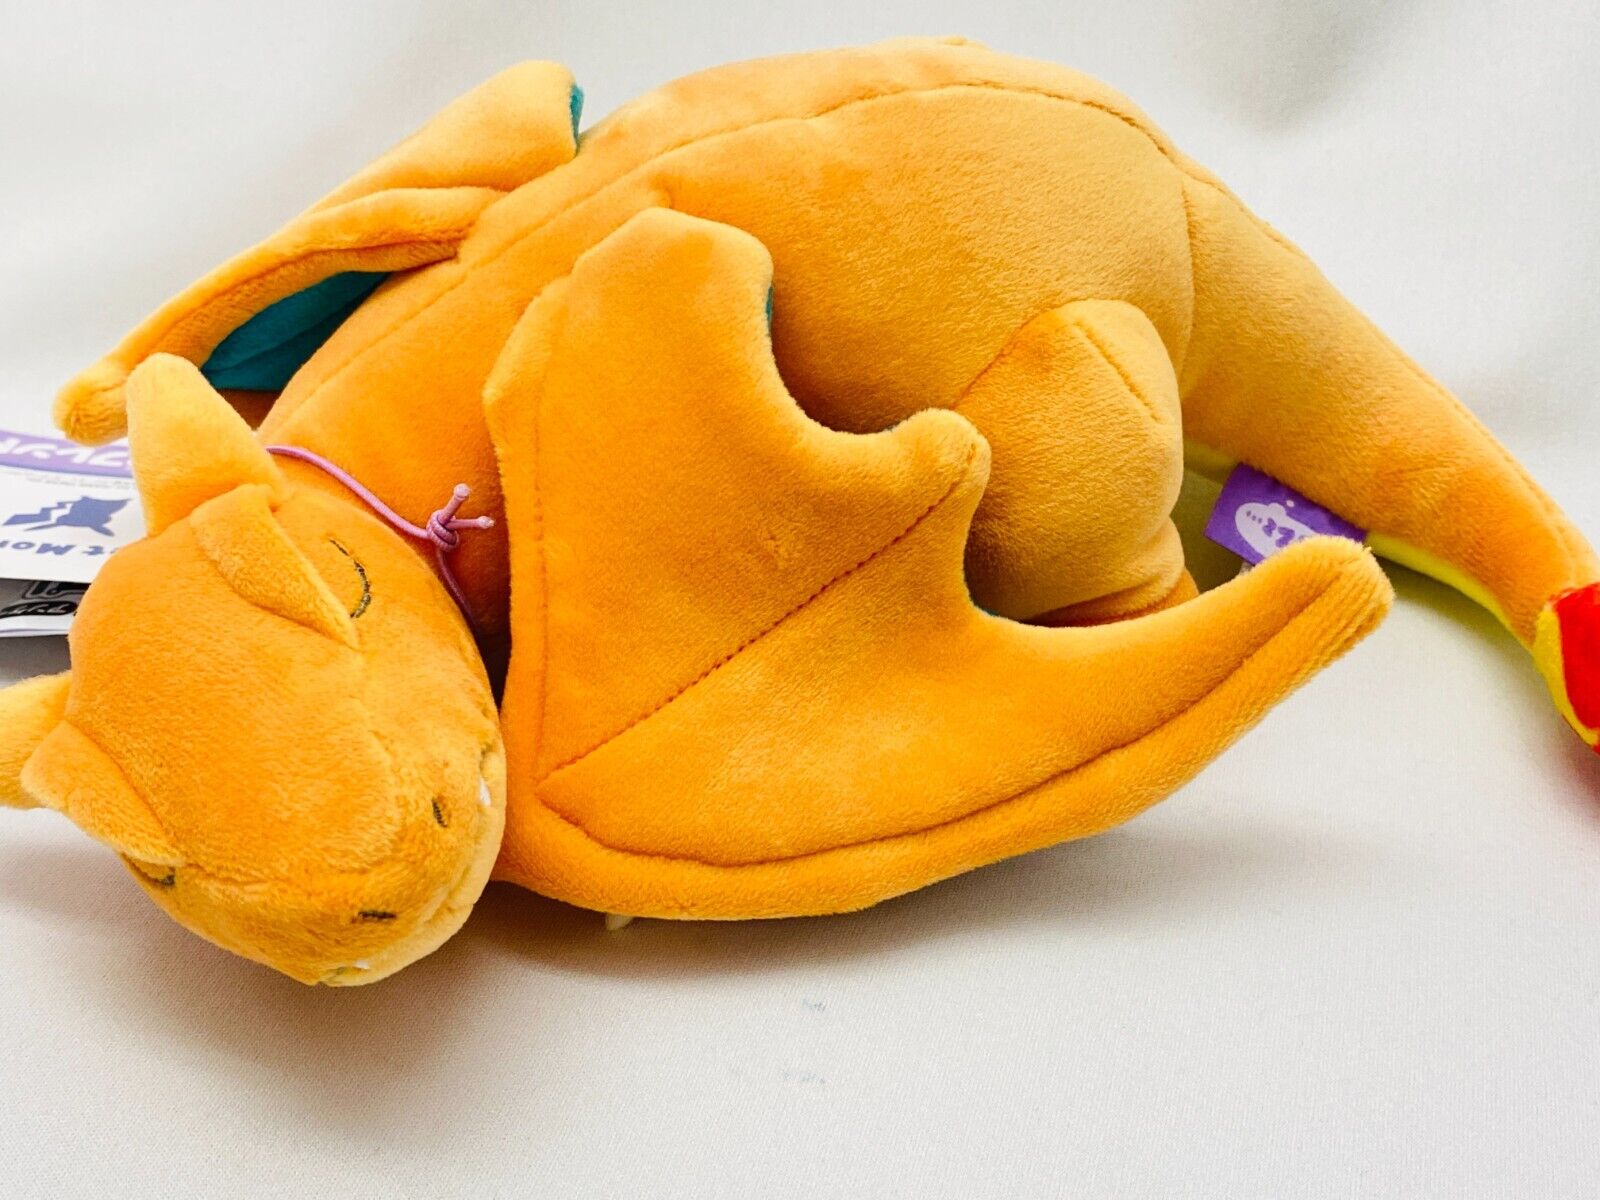 Pokemon Sleep Friend Stuffed Toy Plush S Size Charizard / Pokémon Doll Japan